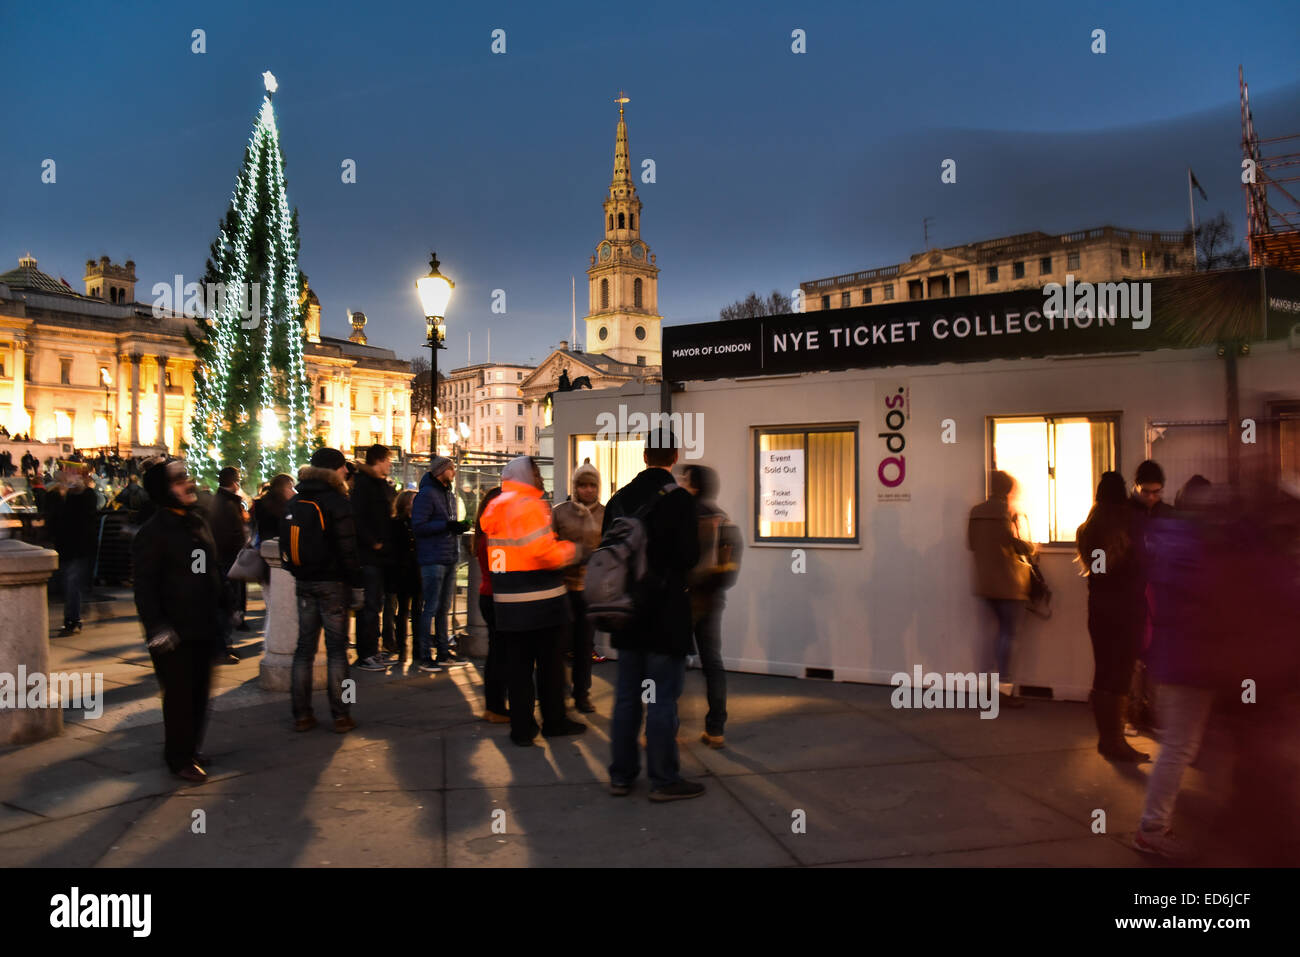 Londra, Regno Unito. Il 29 dicembre, 2014. Una piccola folla in coda il freddo per raccogliere NYE fuochi d' artificio biglietti a Trafalgar Square a Londra. Credito: Vedere Li/Alamy Live News Foto Stock